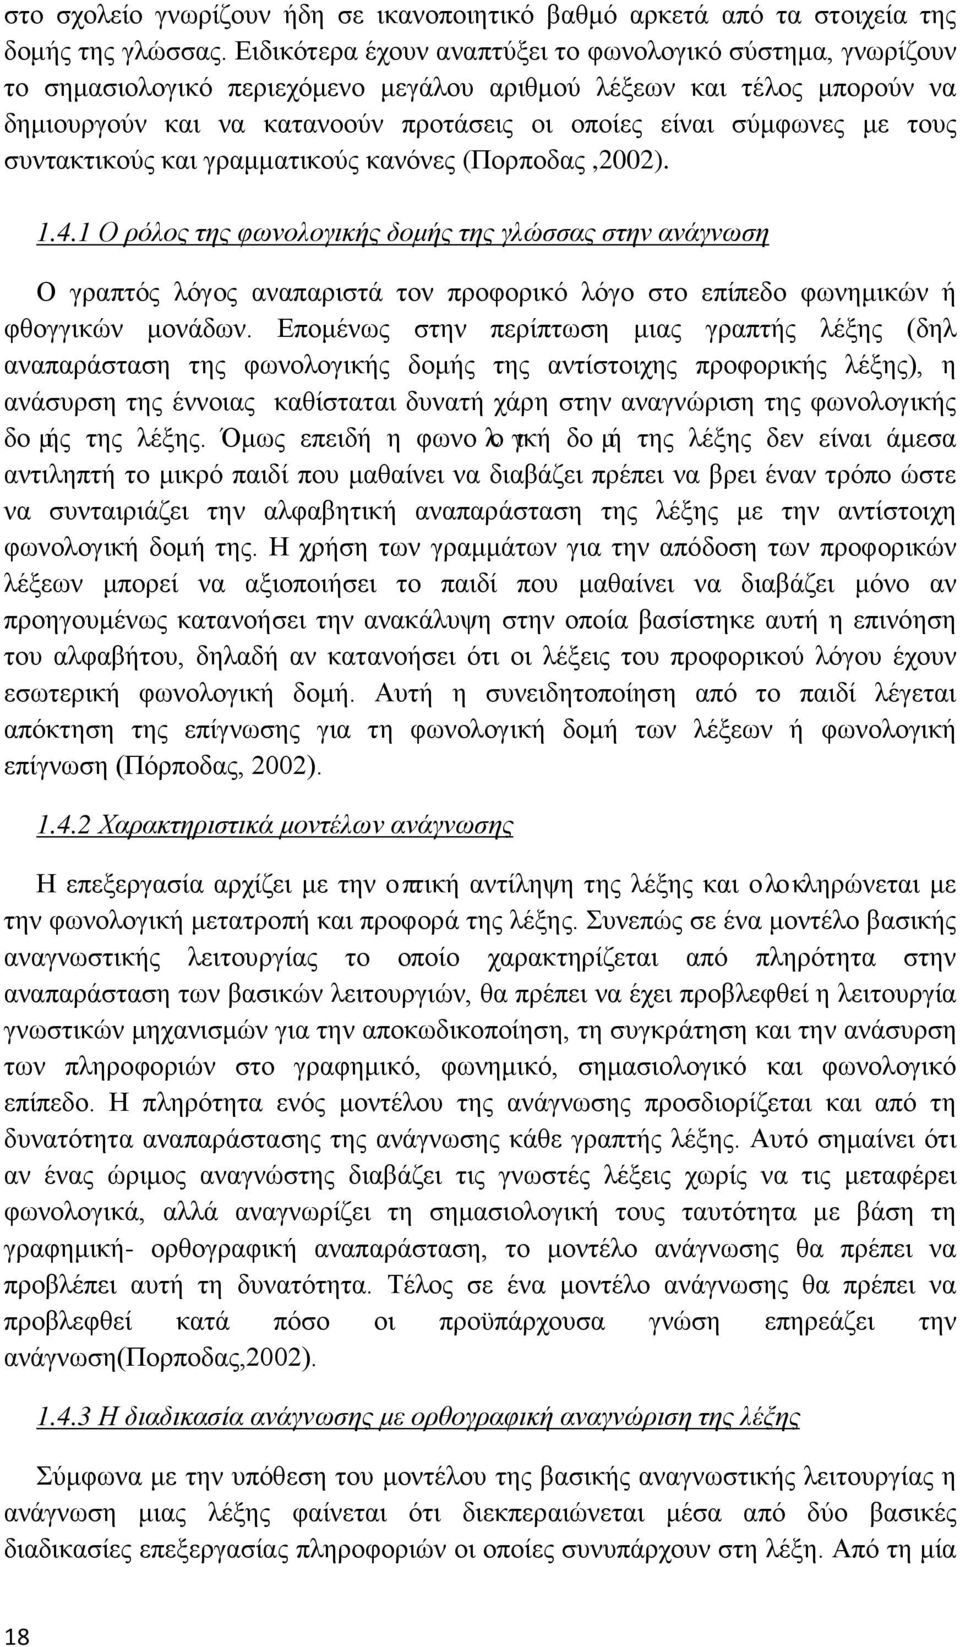 τους συντακτικούς και γραμματικούς κανόνες (Πορποδας,2002). 1.4.